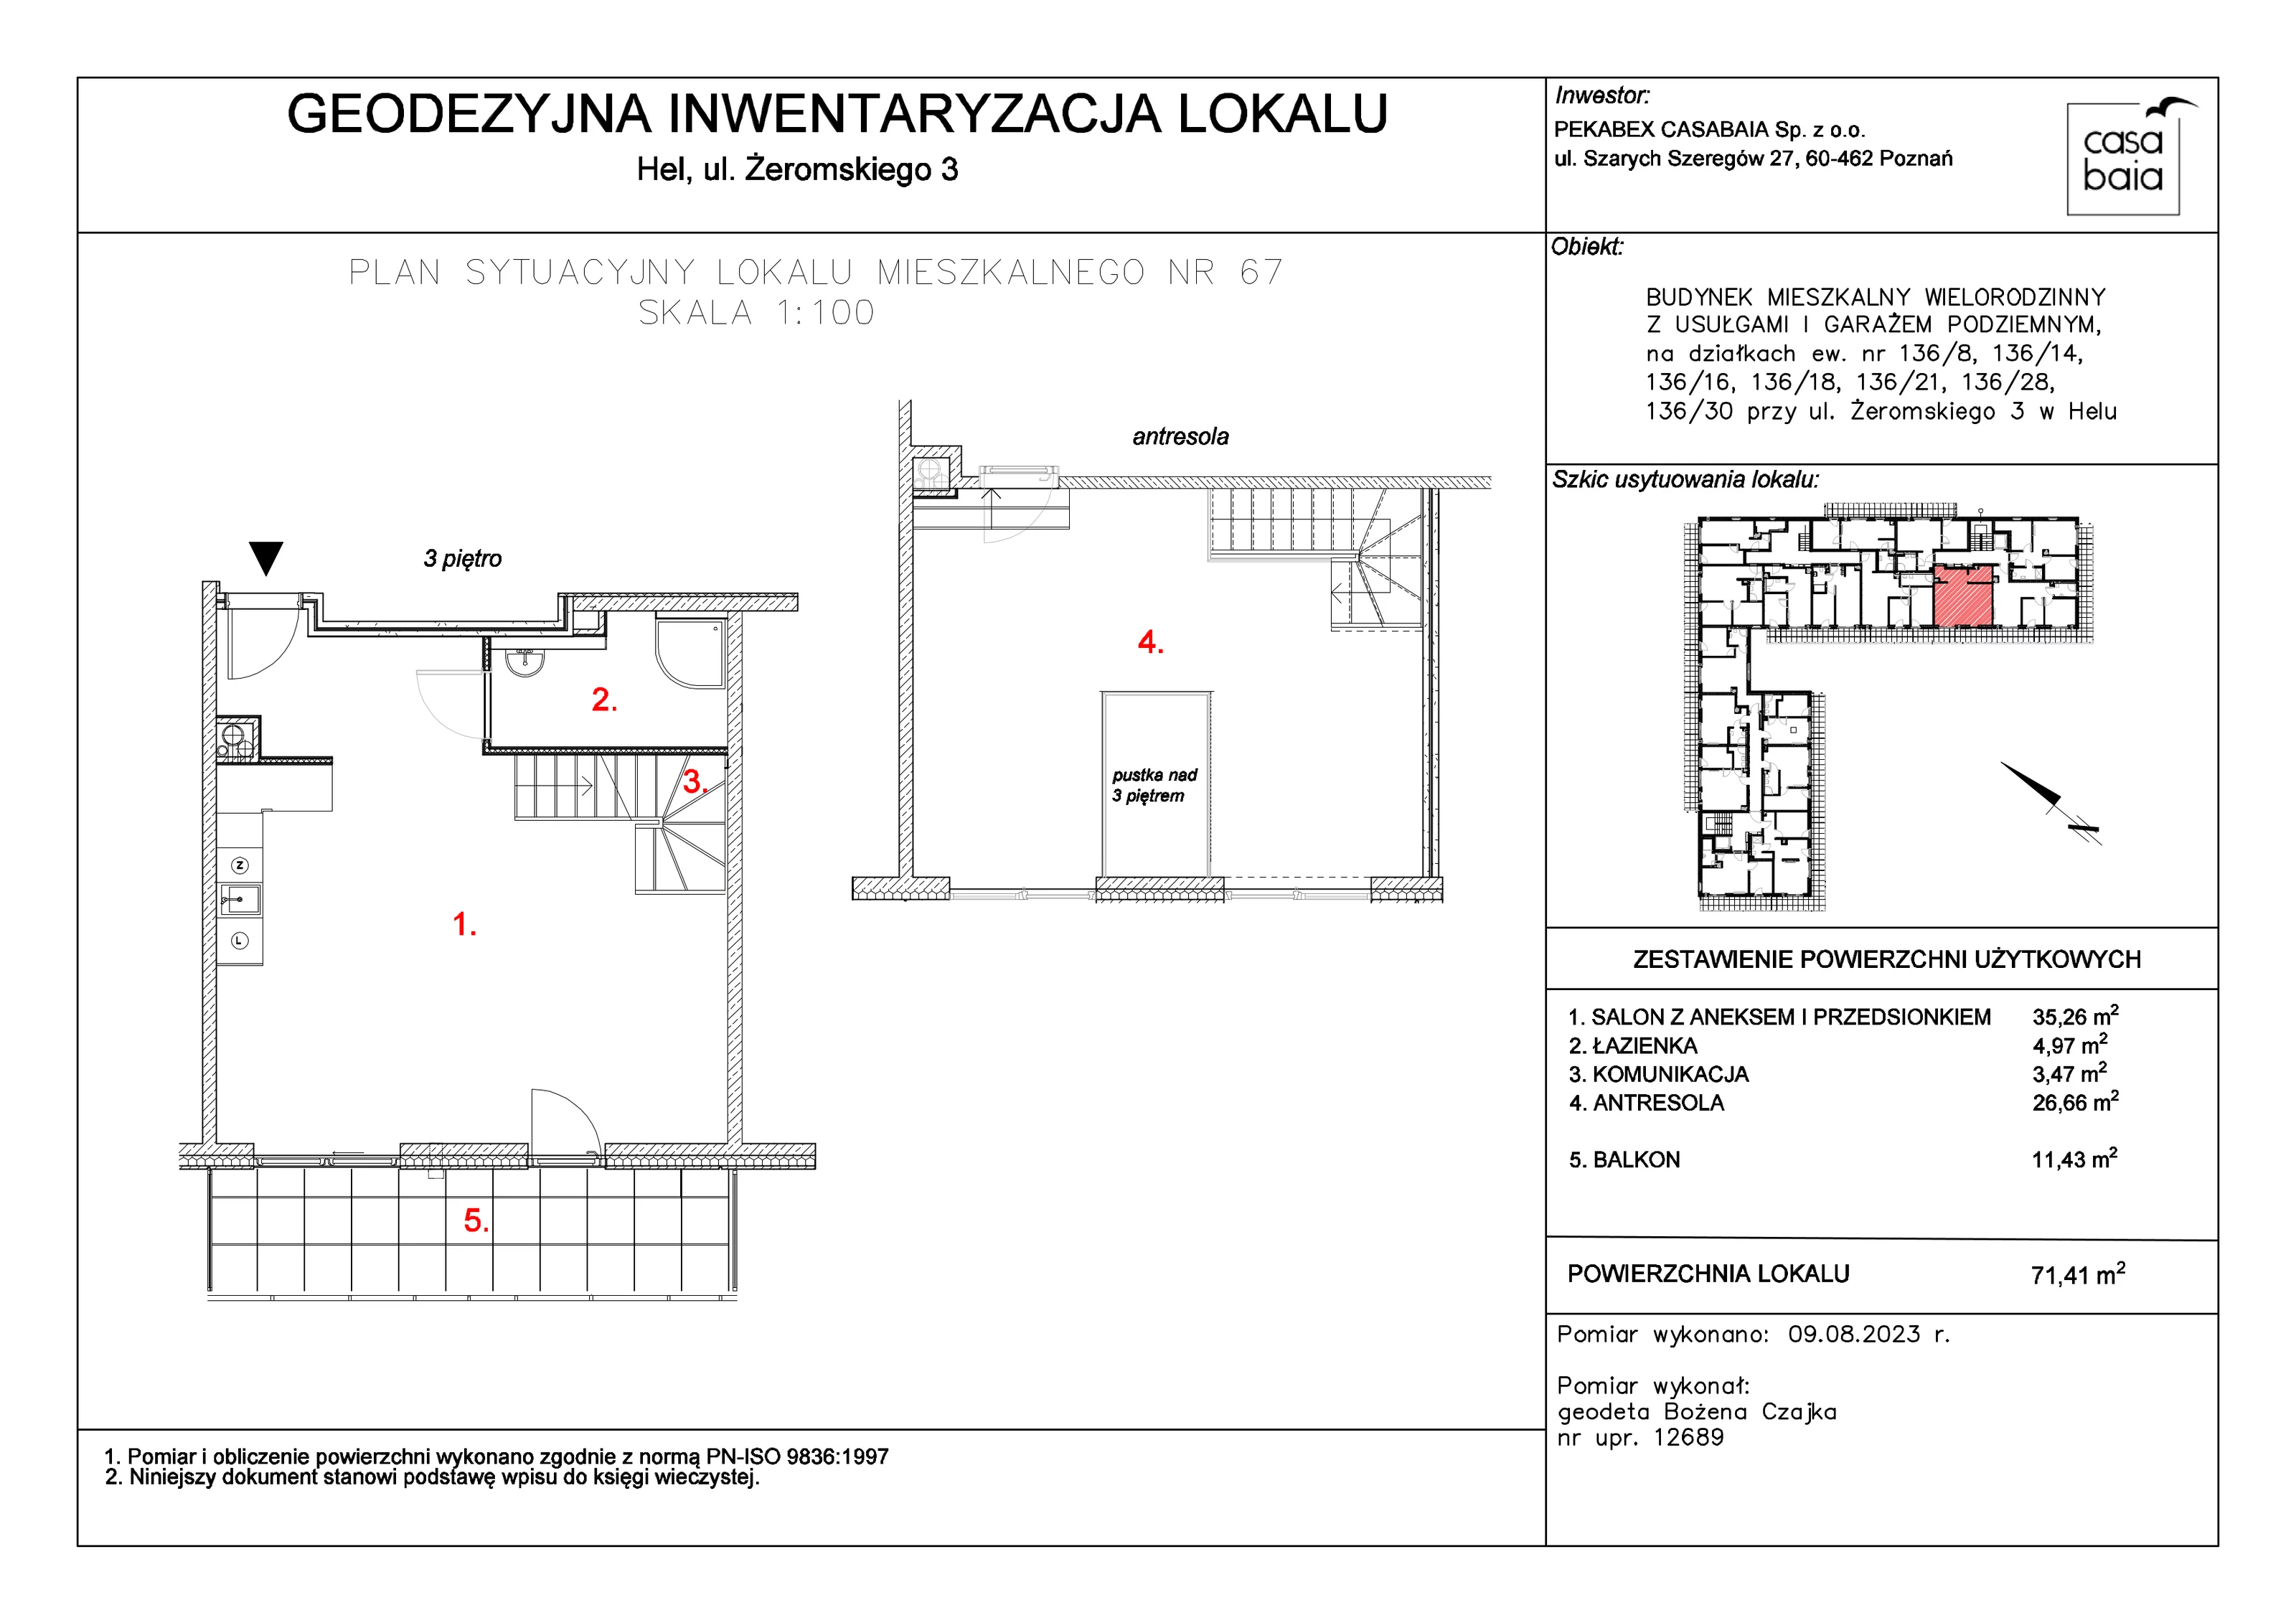 Mieszkanie 71,41 m², piętro 3, oferta nr C4, CASA BAIA, Hel, ul. Stefana Żeromskiego 3